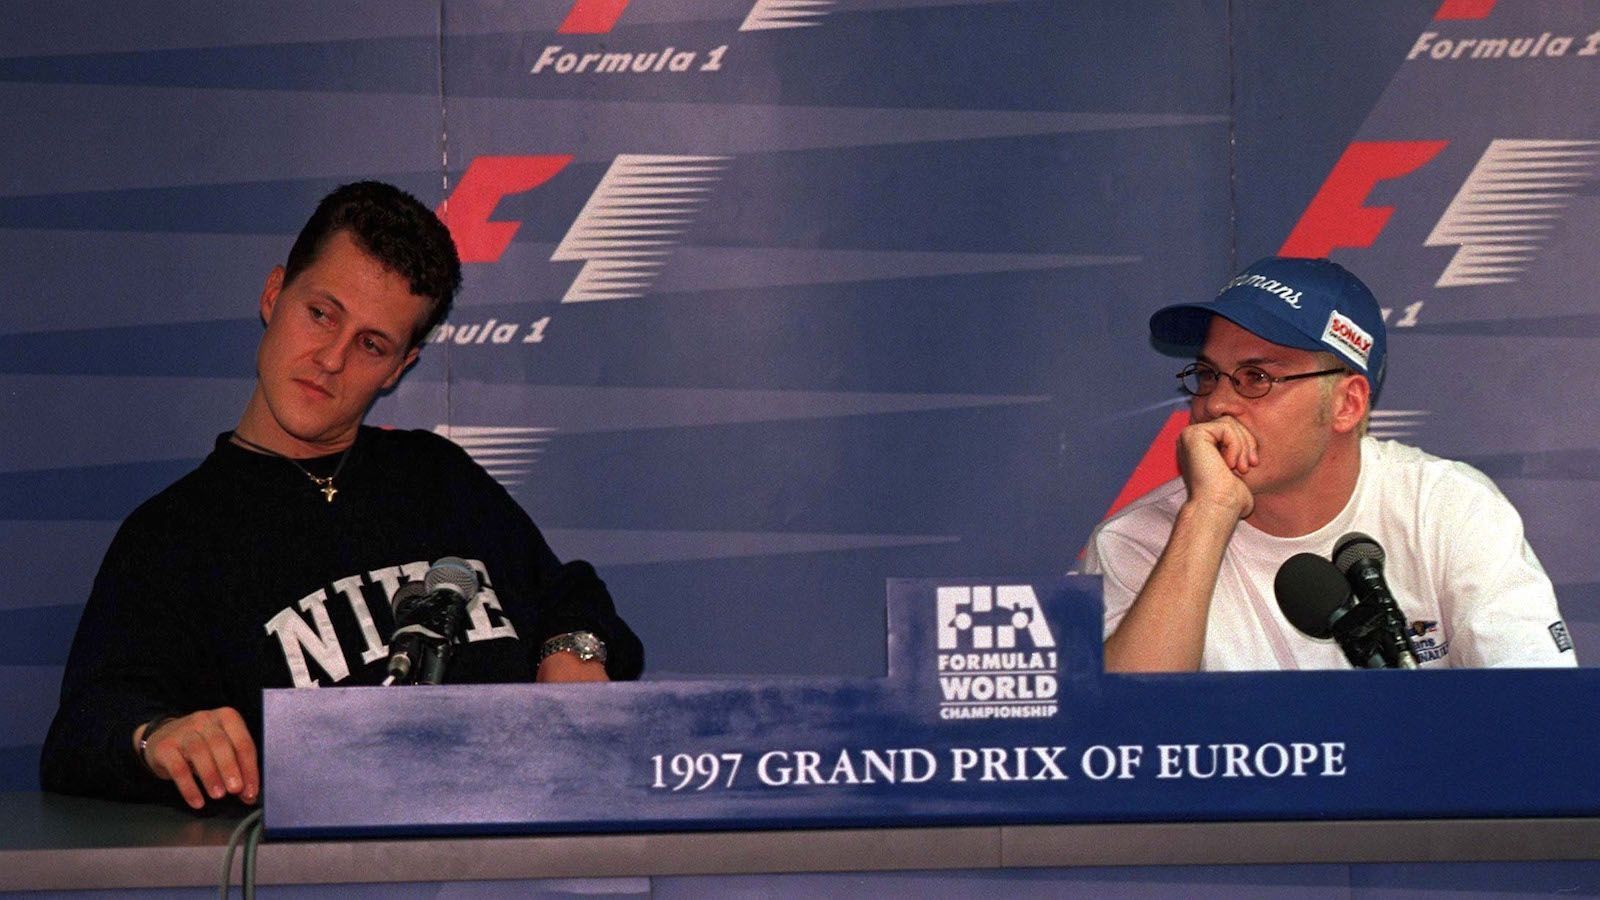 
                <strong>1997, Jerez: Michael Schumacher vs. Jaques Villeneuve</strong><br>
                Michael Schumacher liegt in der WM-Fahrerwertung vor dem letzten Rennen in Jerez einen einzigen Punkt vor Williams-Pilot Jaques Villeneuve. Der Deutsche führt das Rennen für insgesamt 40 Runden an. In Runde 48 will der schnellere Villeneuve Schumi in der Dry-Sack-Kurve überholen. Schumacher macht die Tür zu - die beiden kollidieren. Während Villeneuve weiterfahren kann, muss Schumi aufgeben. Der Kanadier wird Weltmeister, Schumacher werden nach dem Rennen sämtliche WM-Punkte aberkannt.
              